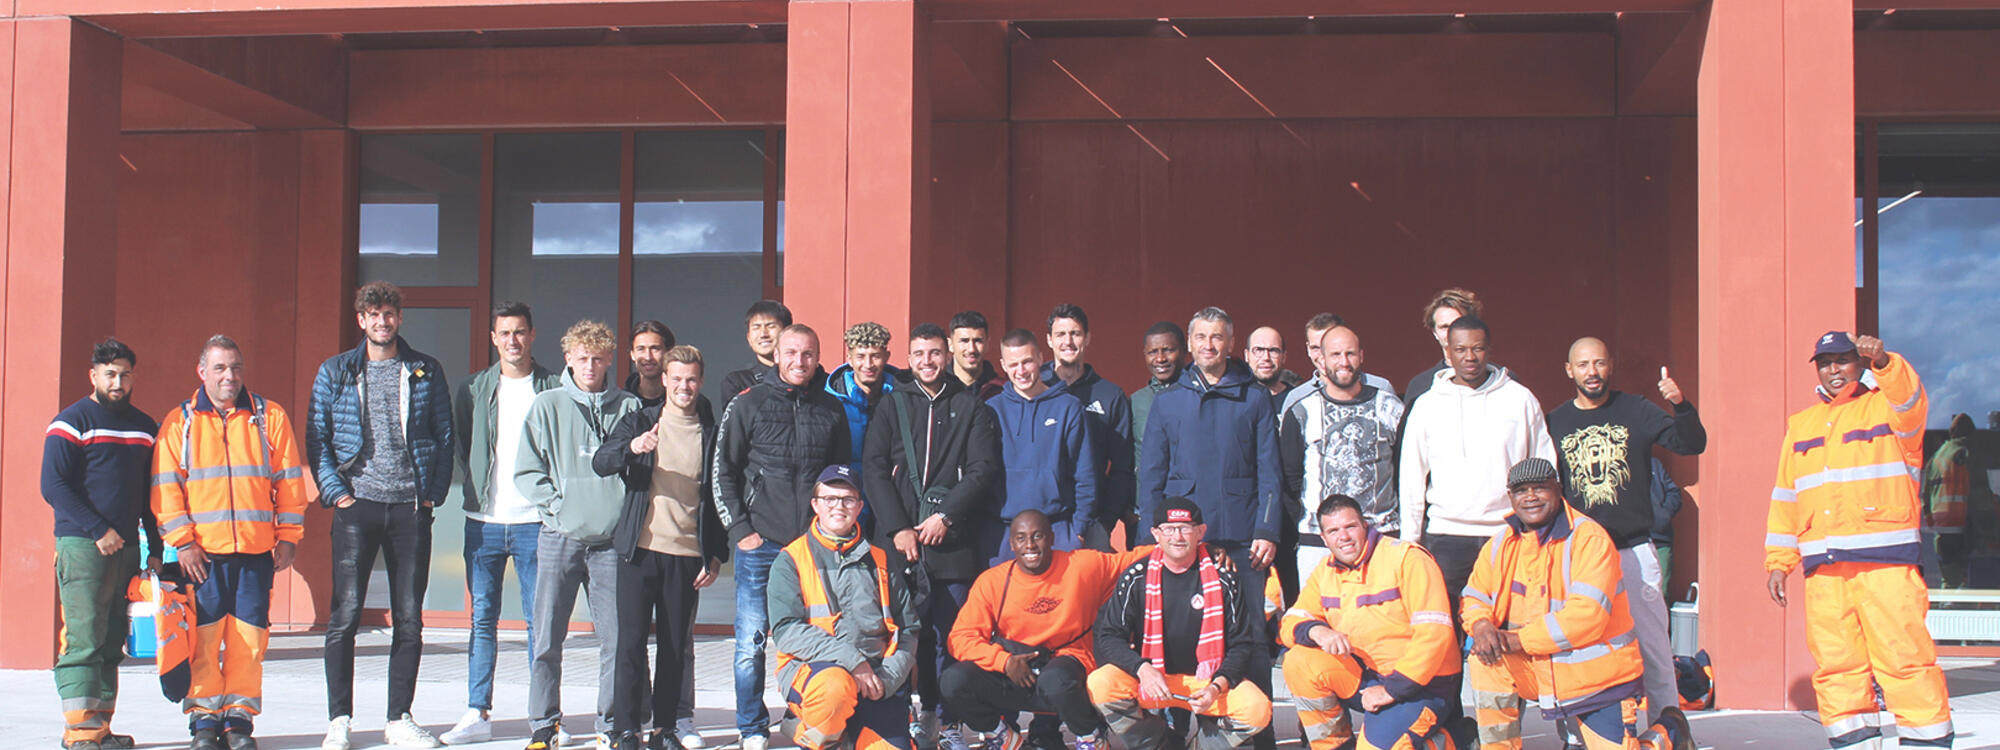 Voetbalploeg KV Kortrijk bezoekt partner en maatwerkbedrijf WAAK